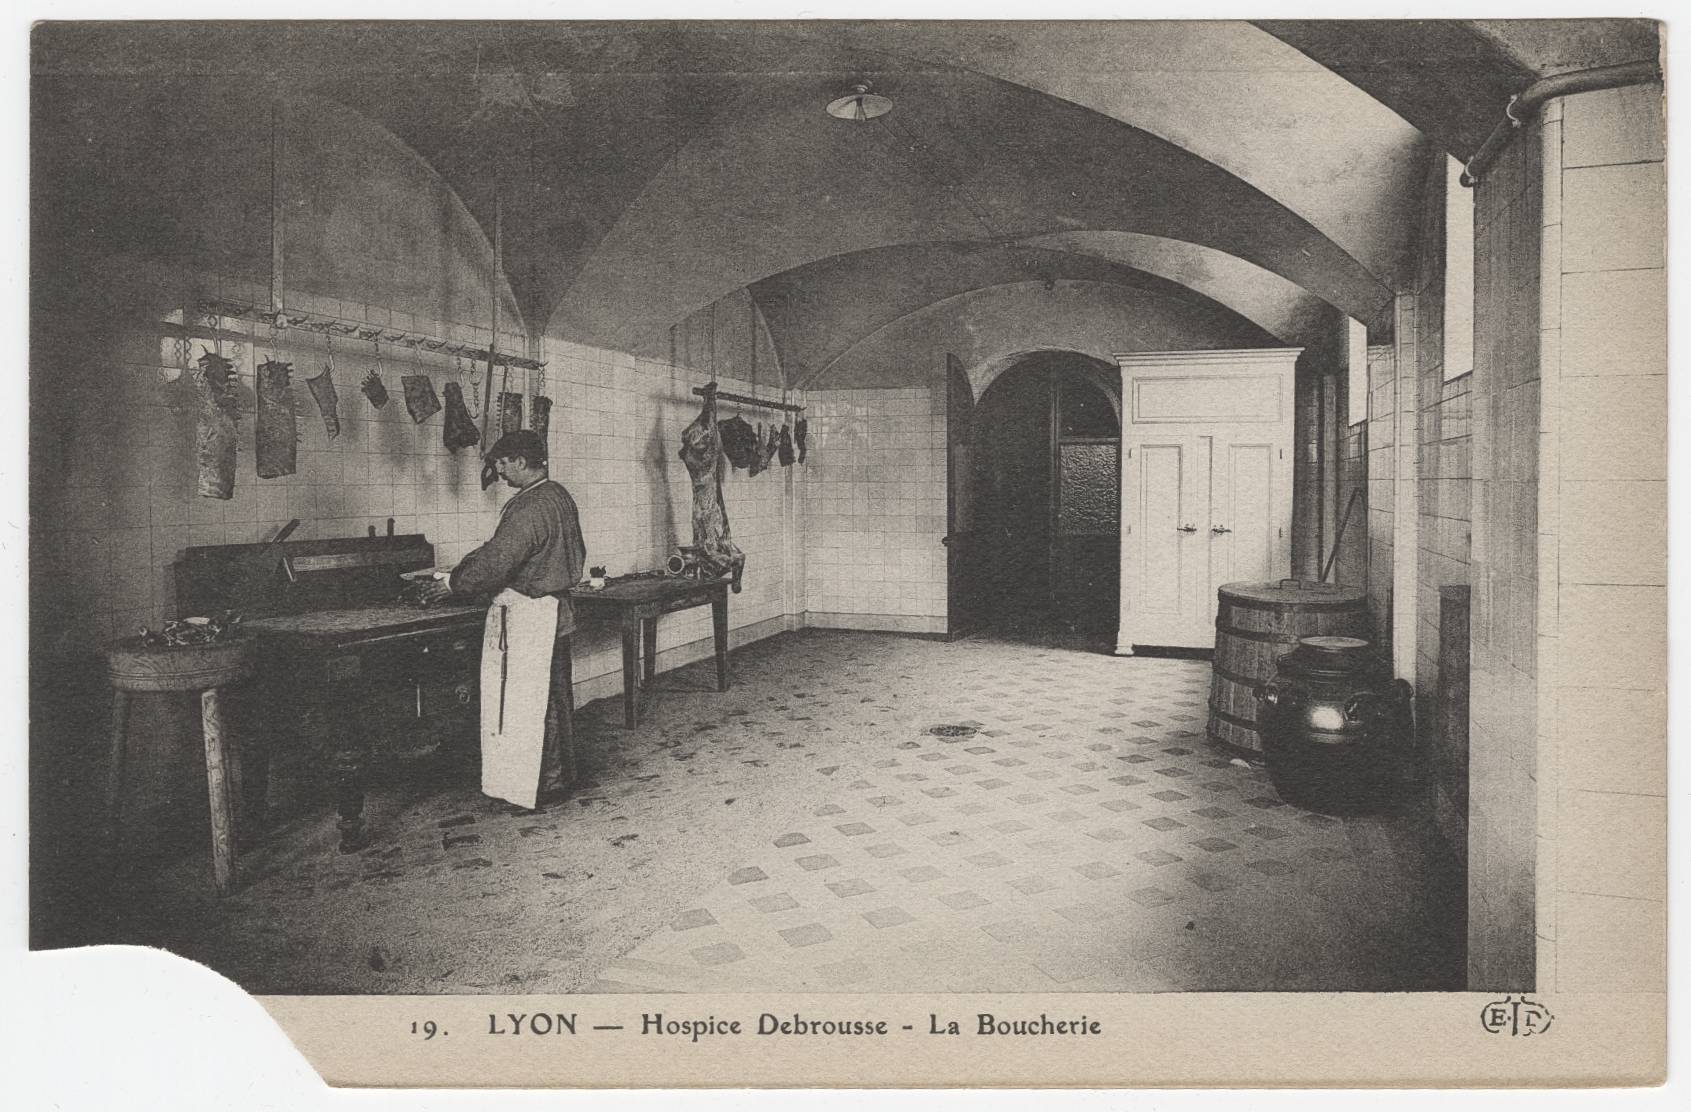 Lyon - Hospice Debrousse, la boucherie : carte postale NB (vers 1910, cote : 4FI/3634)